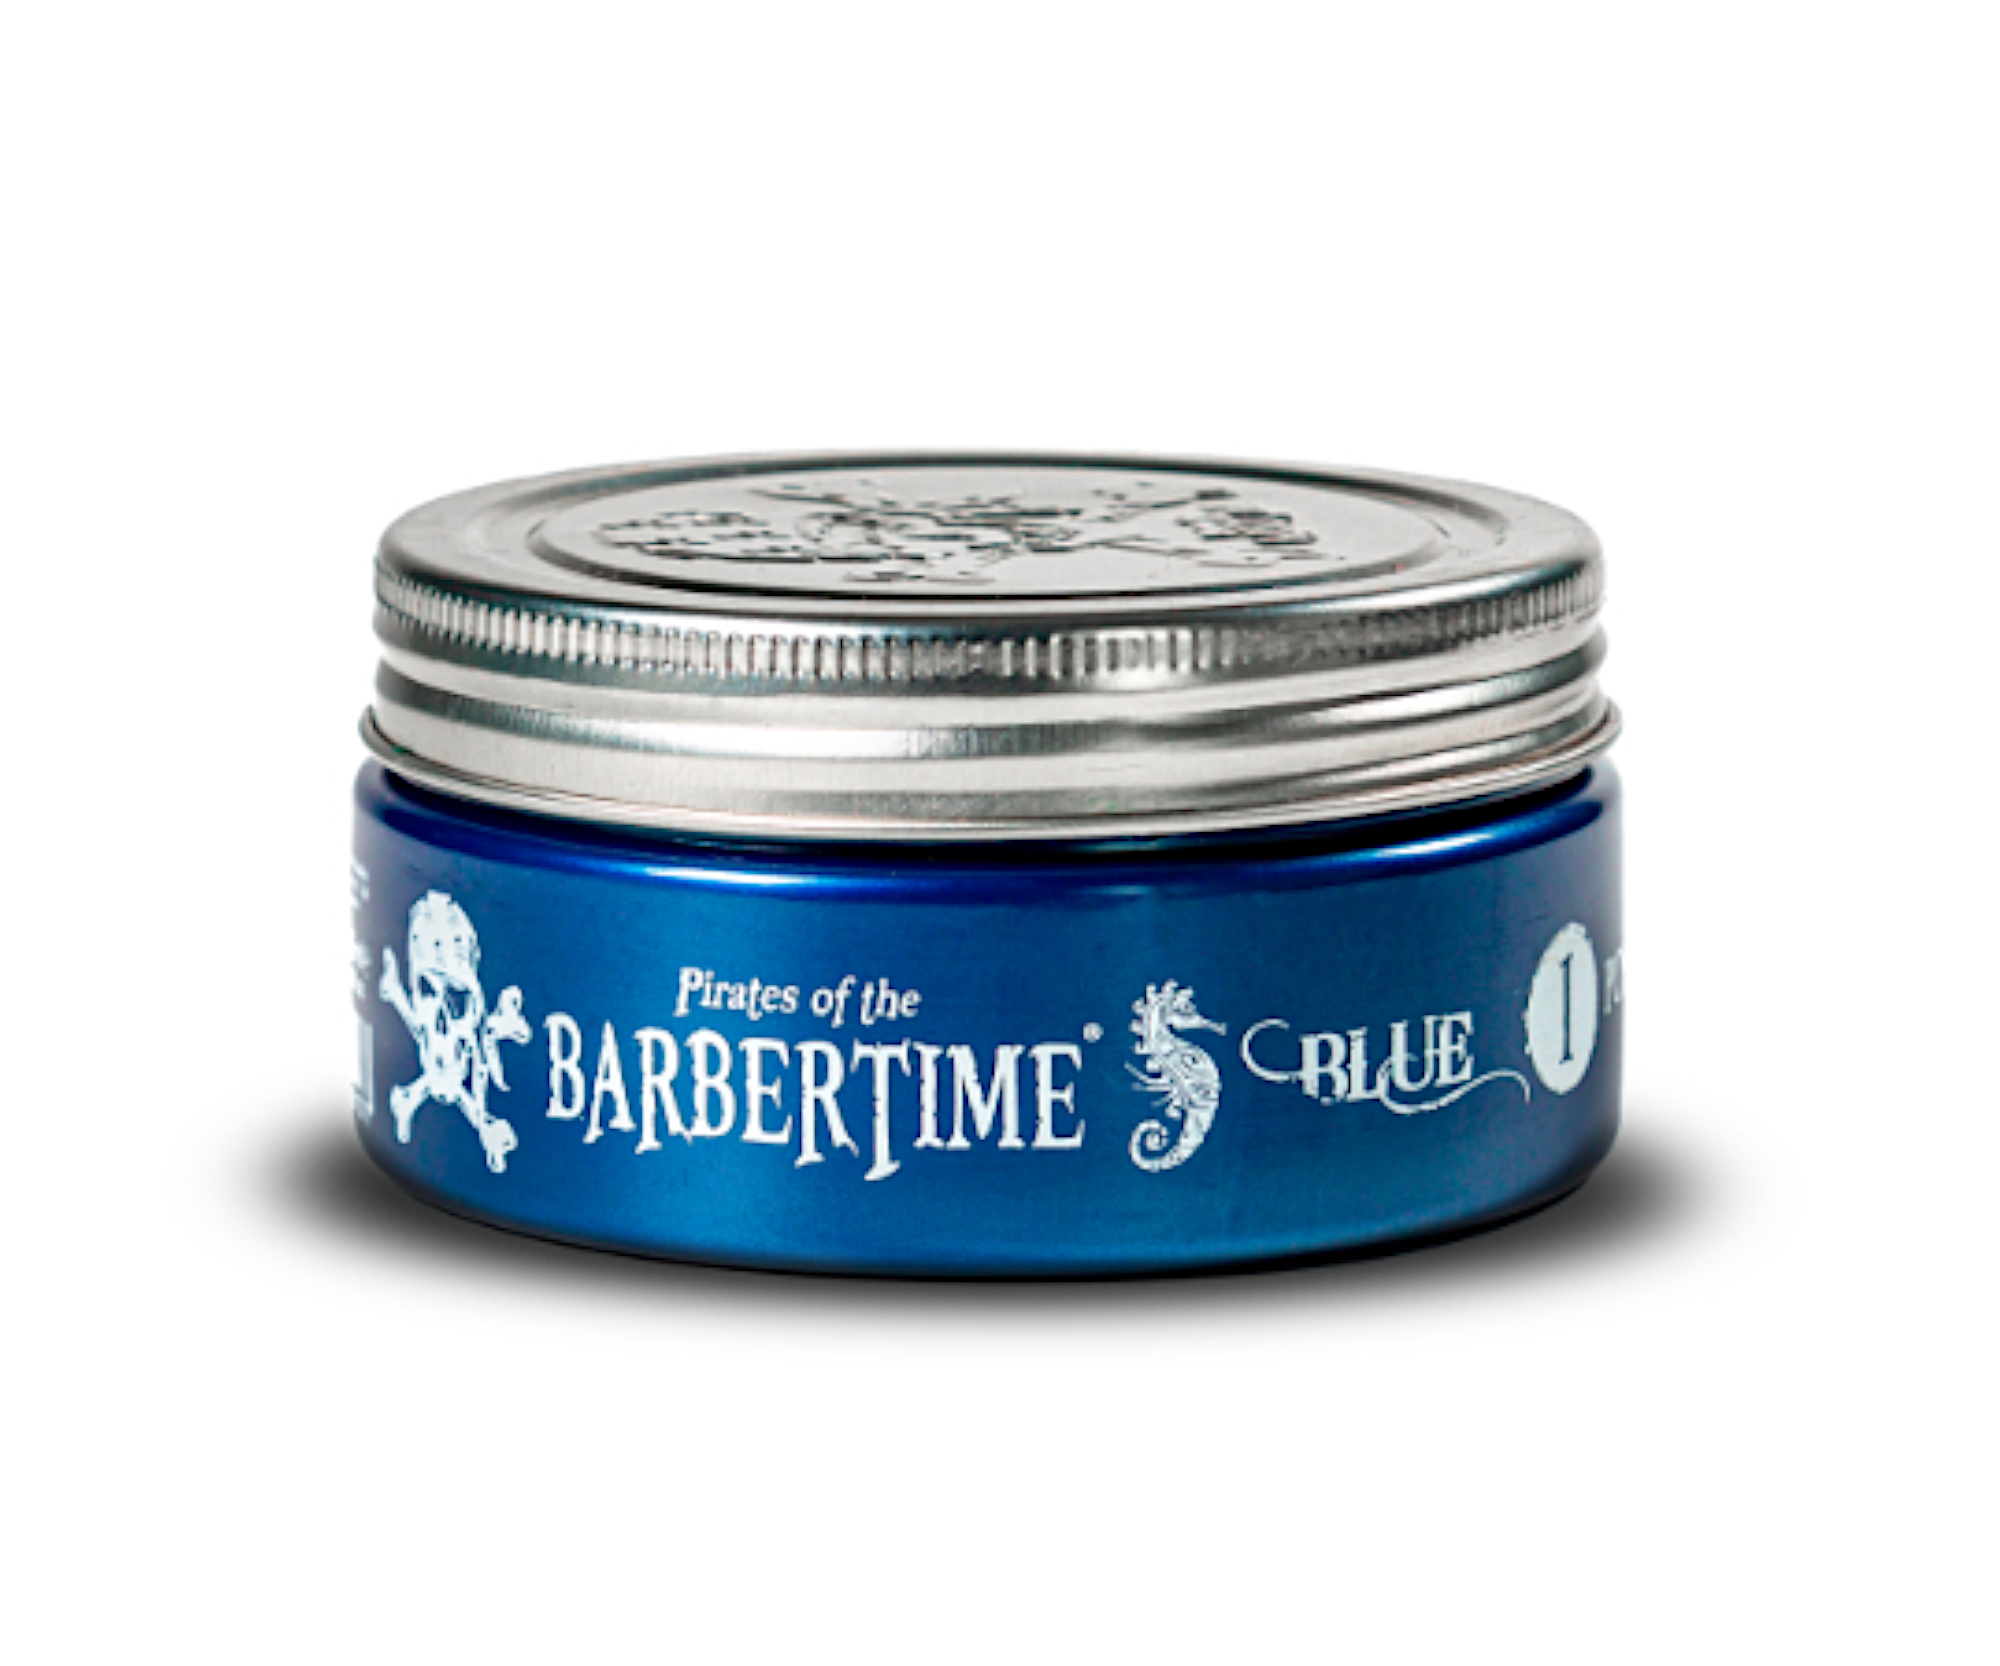 Pomáda na vlasy s maximální fixací Barbertime Blue Pomade No. 1 - 150 ml - Pirates of the Barbertime + dárek zdarma